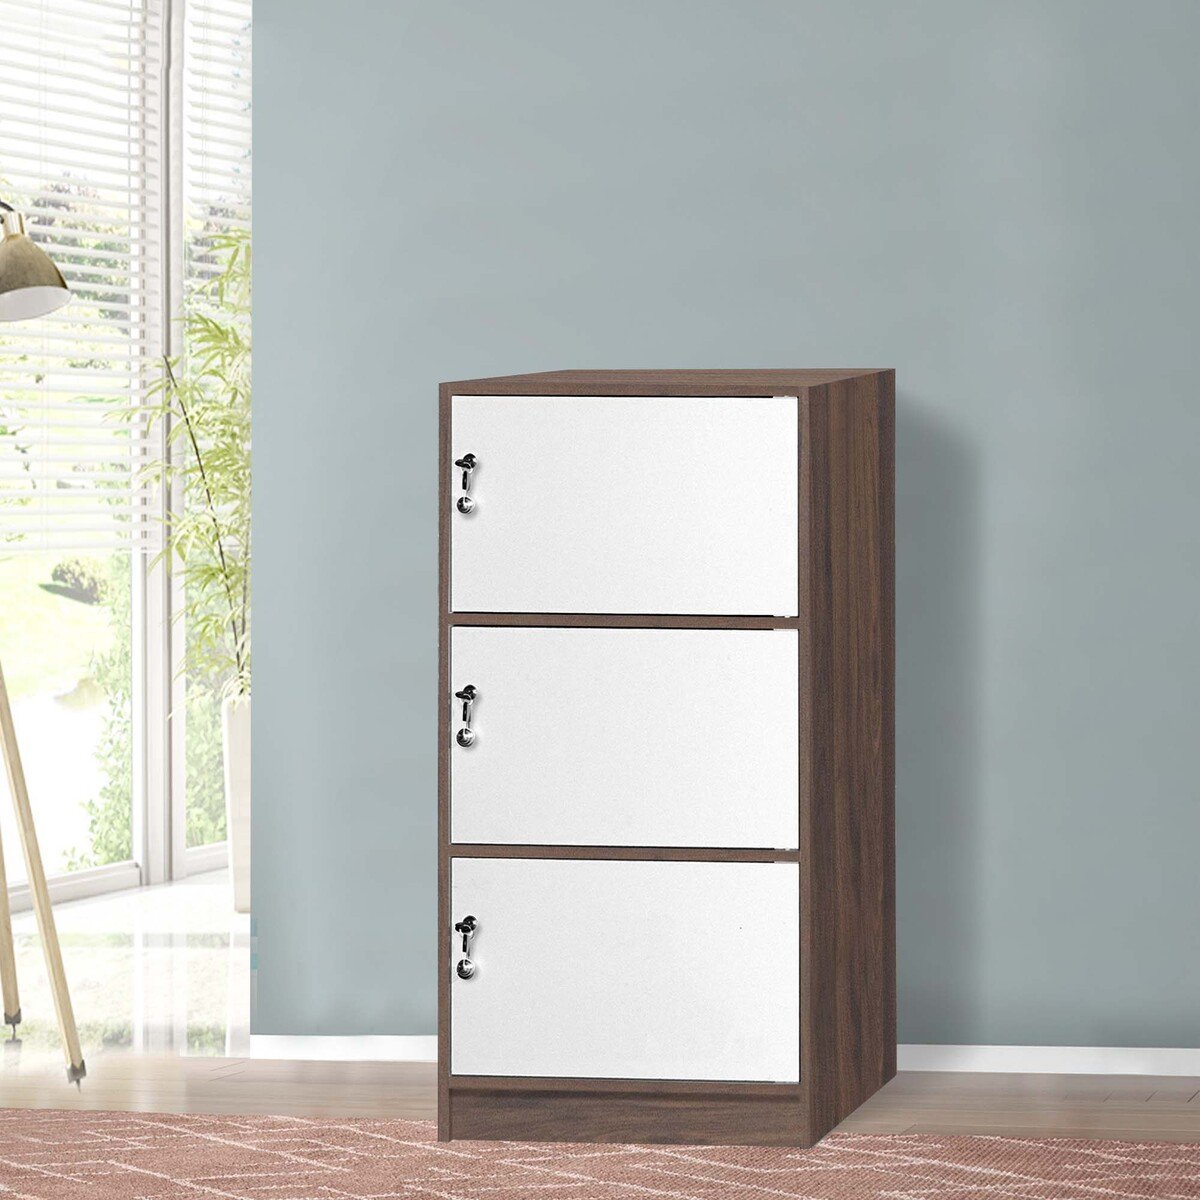 Maple Leaf Wooden Storage Cabinet 3Door With Lock H122xW60xD40cm Walnut White